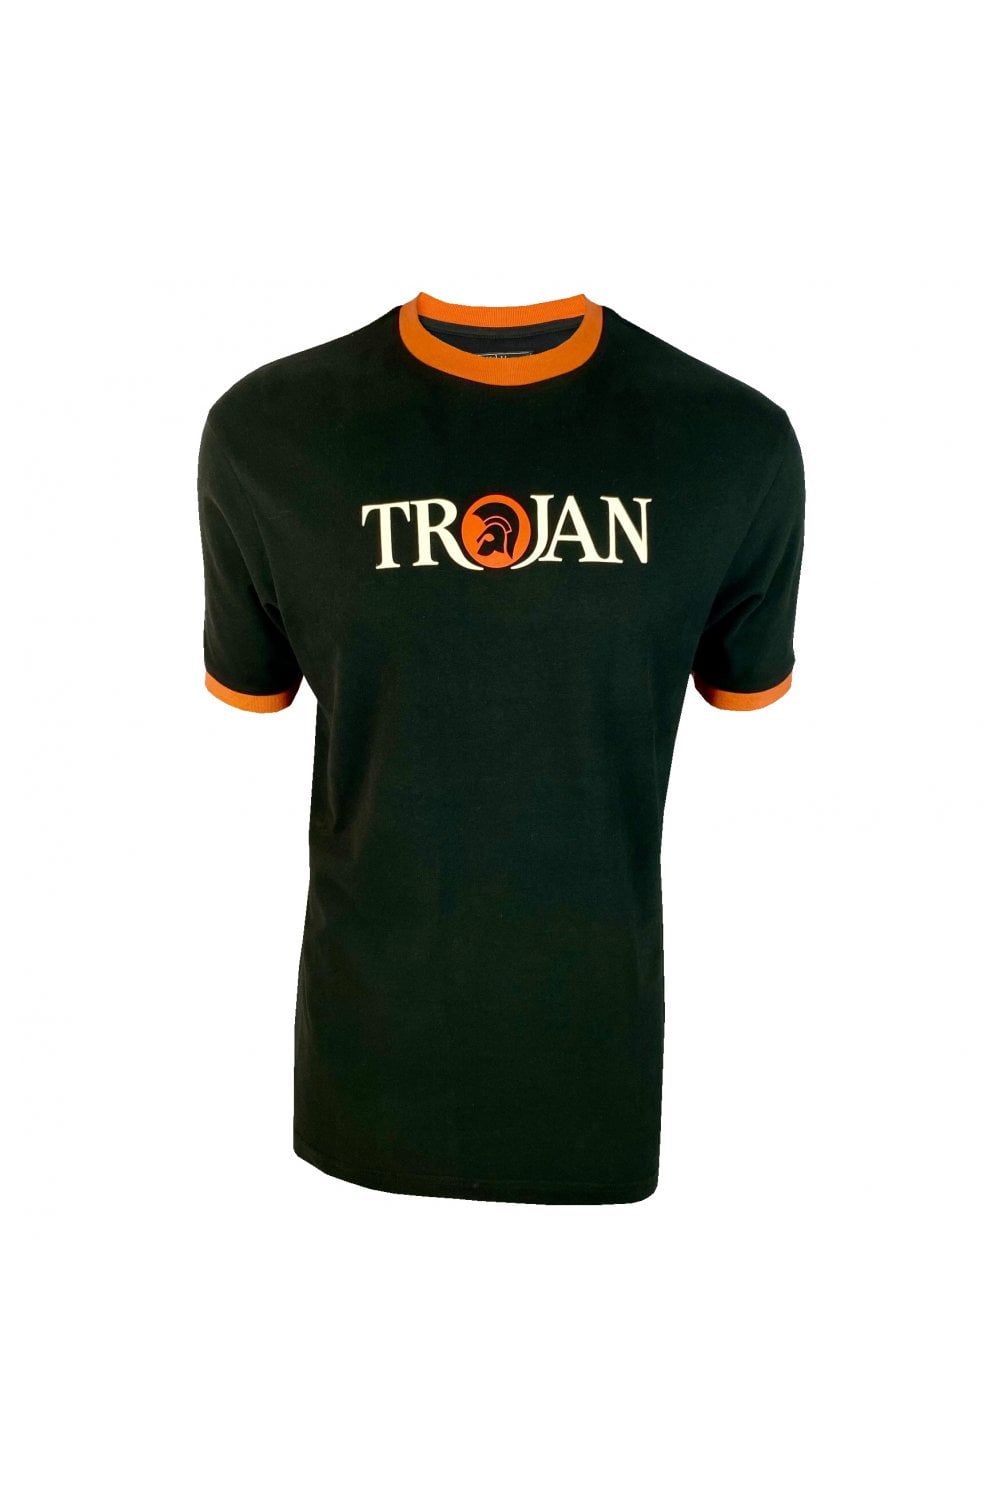 Trojan Logo Ringer Tee TC/1014 Black